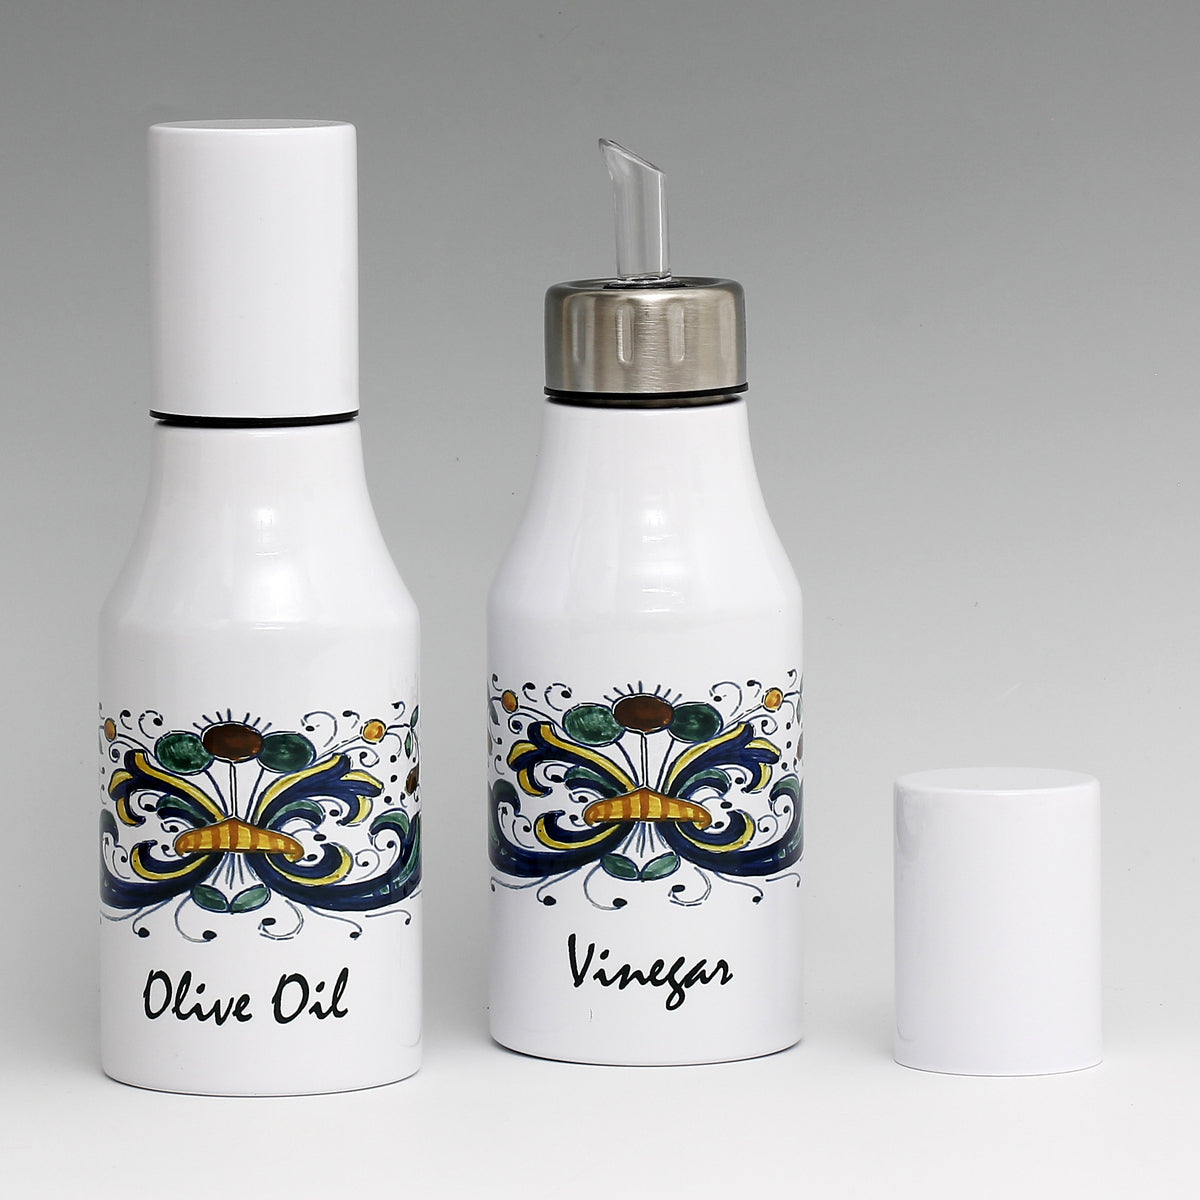 SUBLIMART: Bundle Oil & Vinegar Dispensers with non-drip pourer and dust cover cap (Design 01)